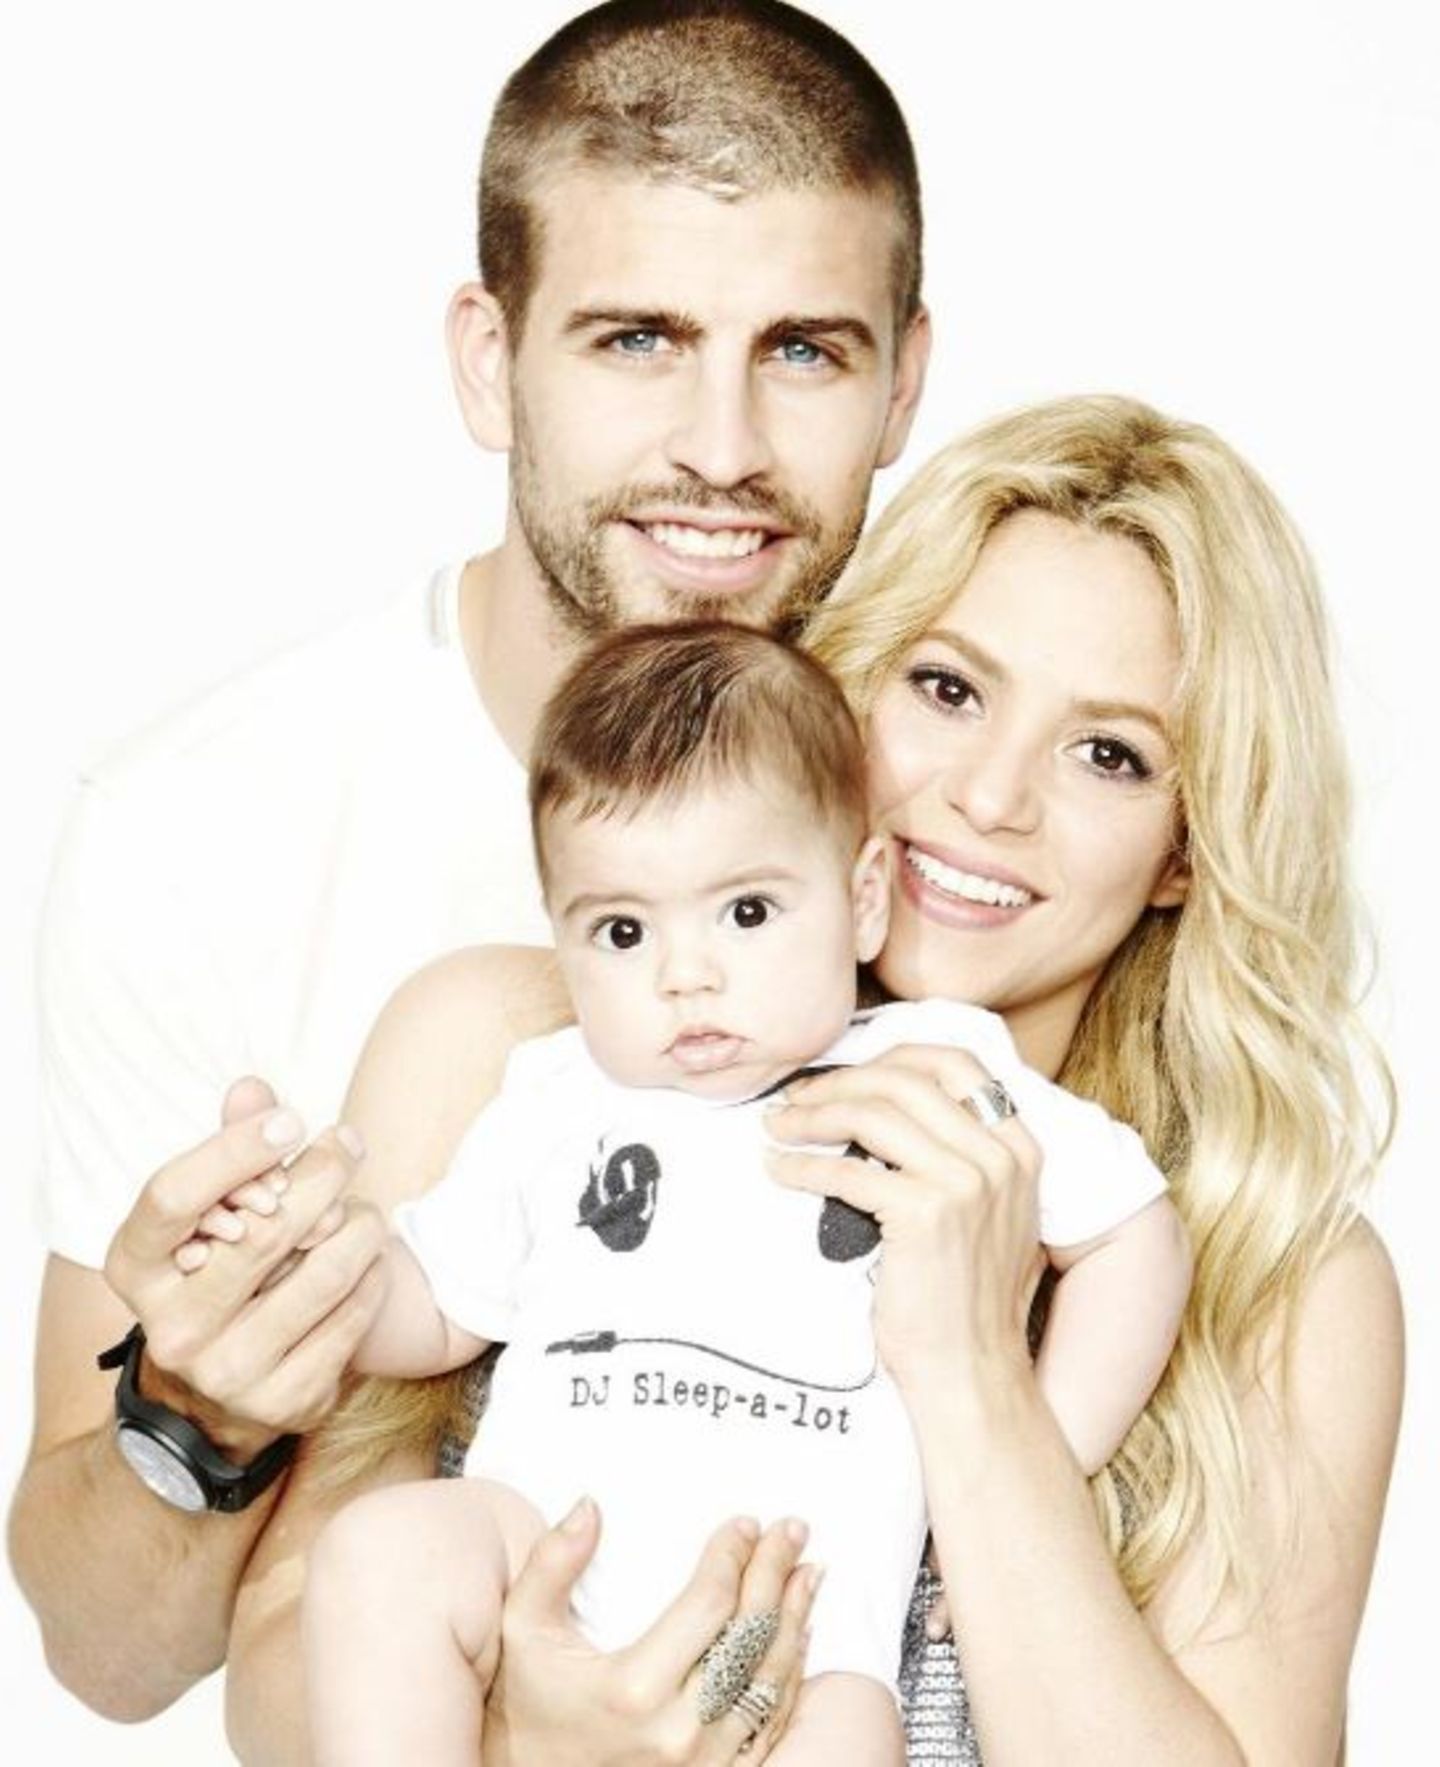 17. Juni 2013  Shakira und Piqué teilen ein Familienfoto mit dem kleinen Milan auf Twitter.